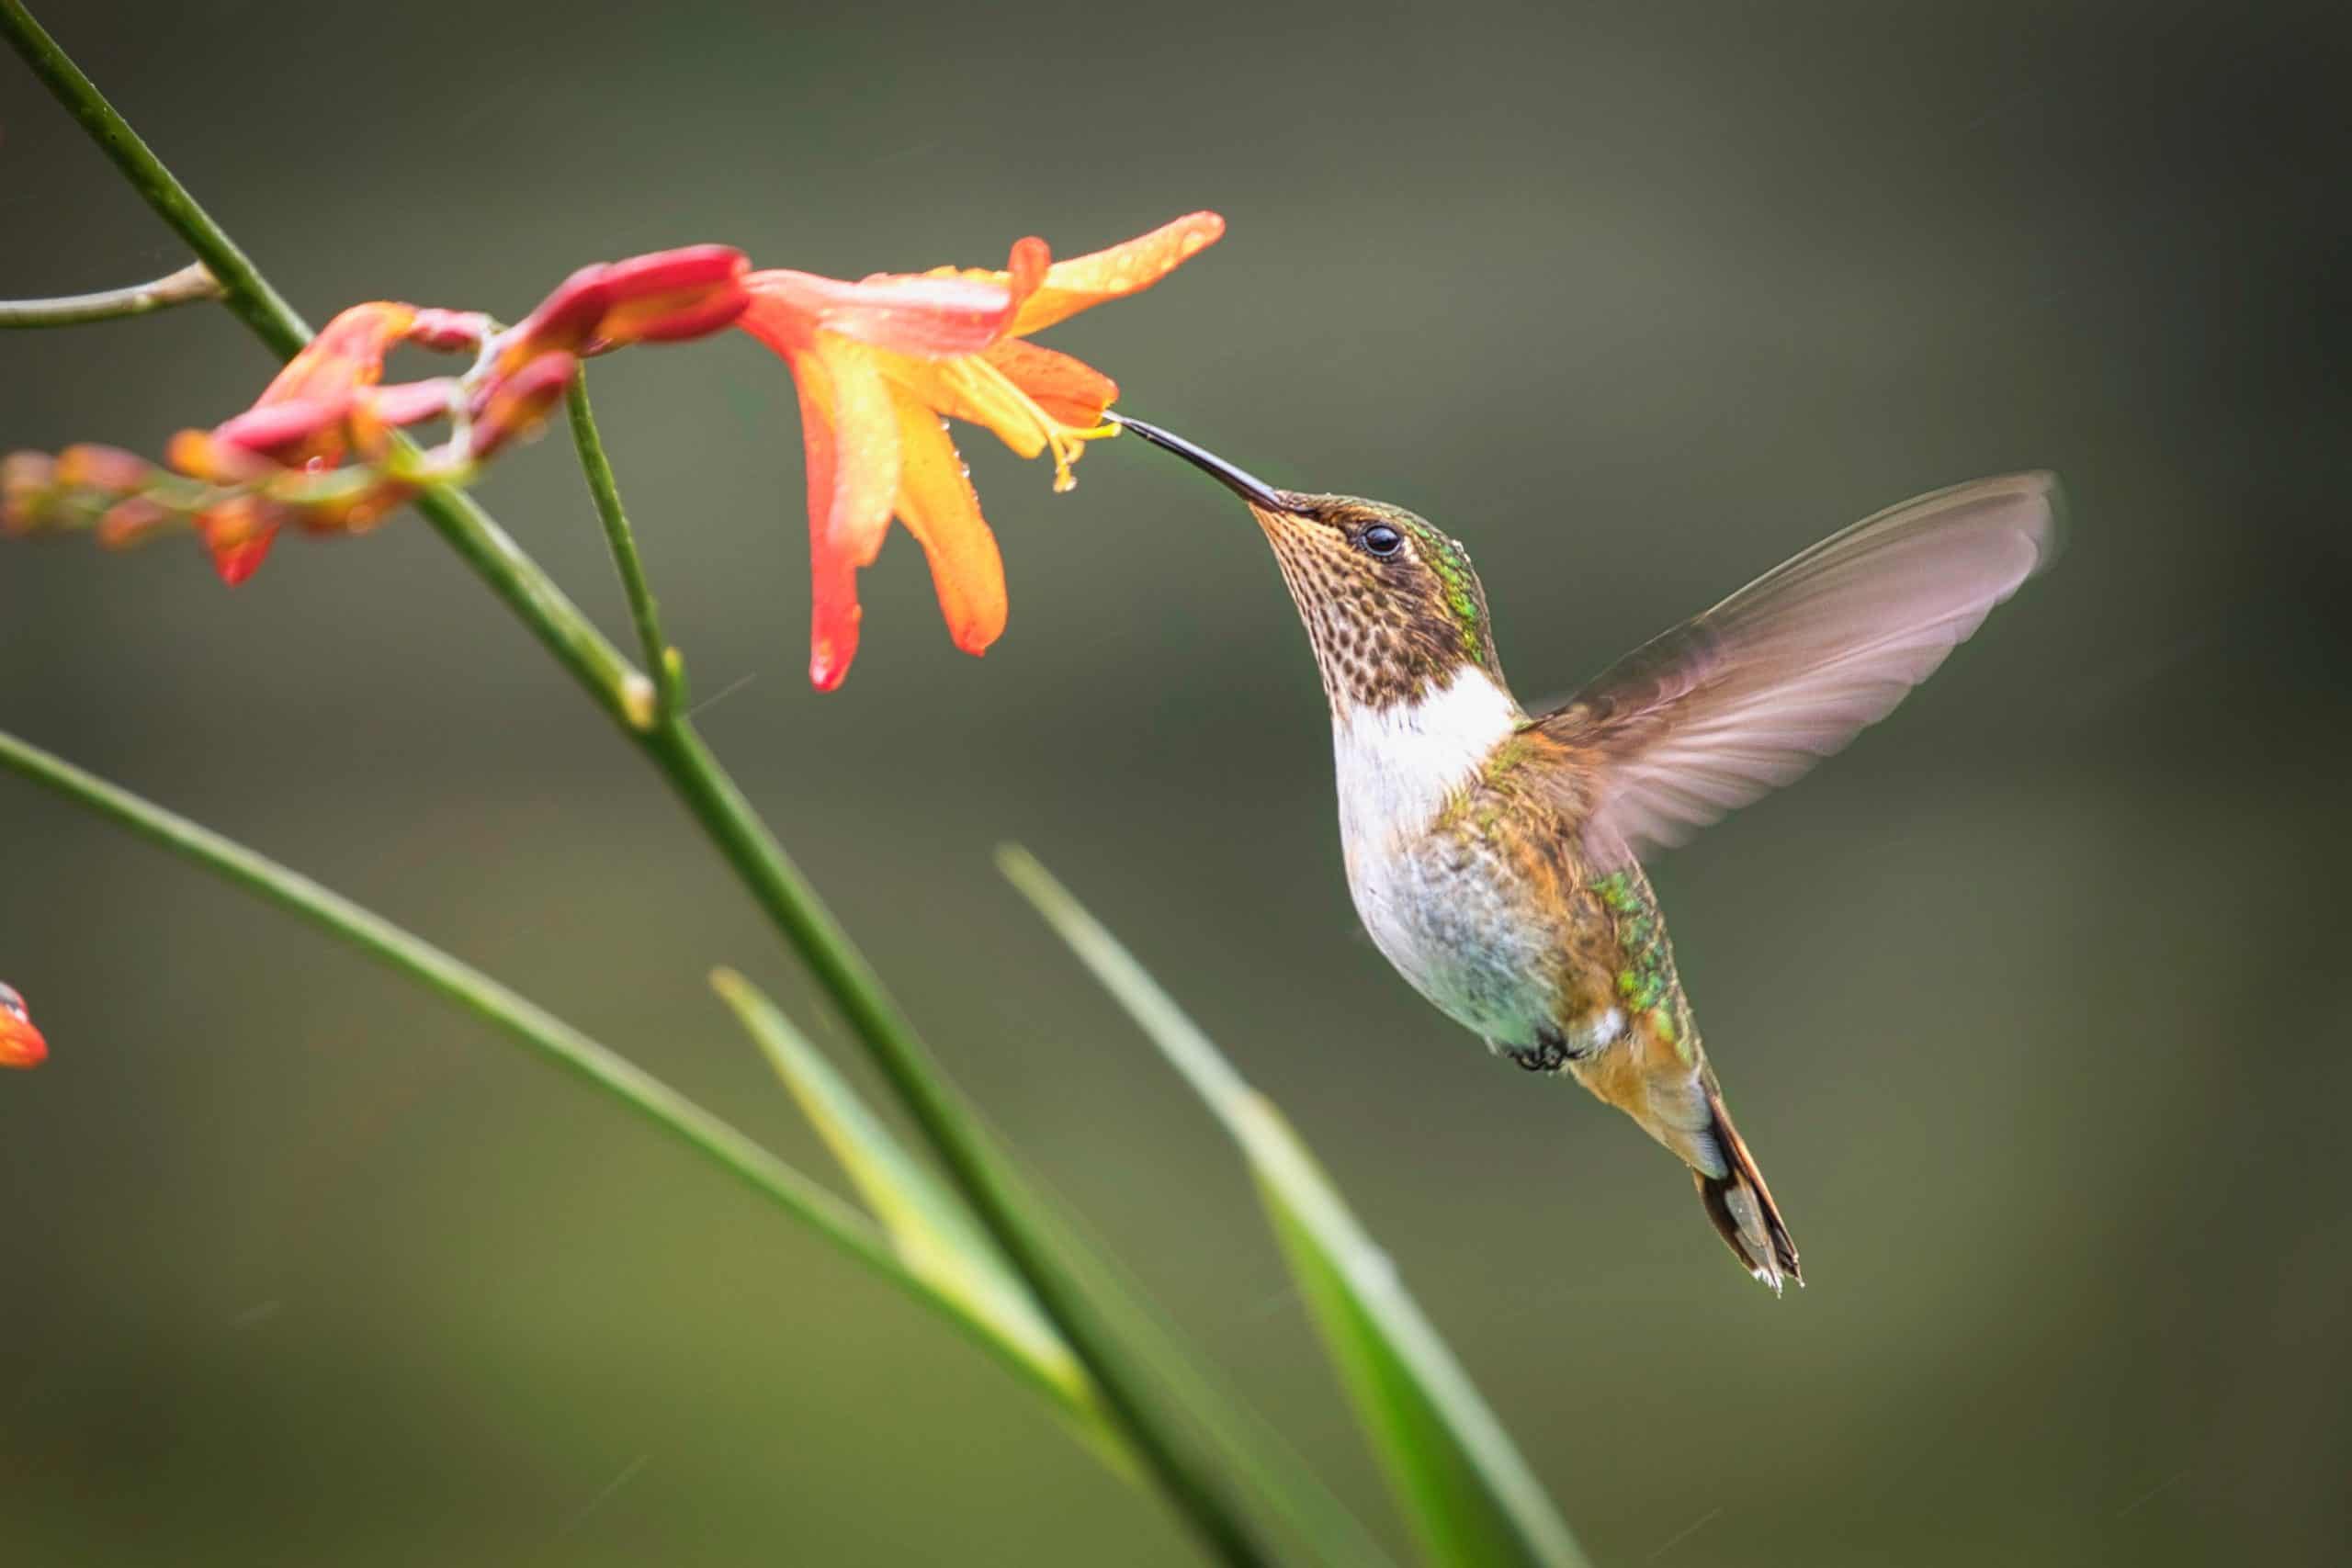 Do hummingbirds ever get tired